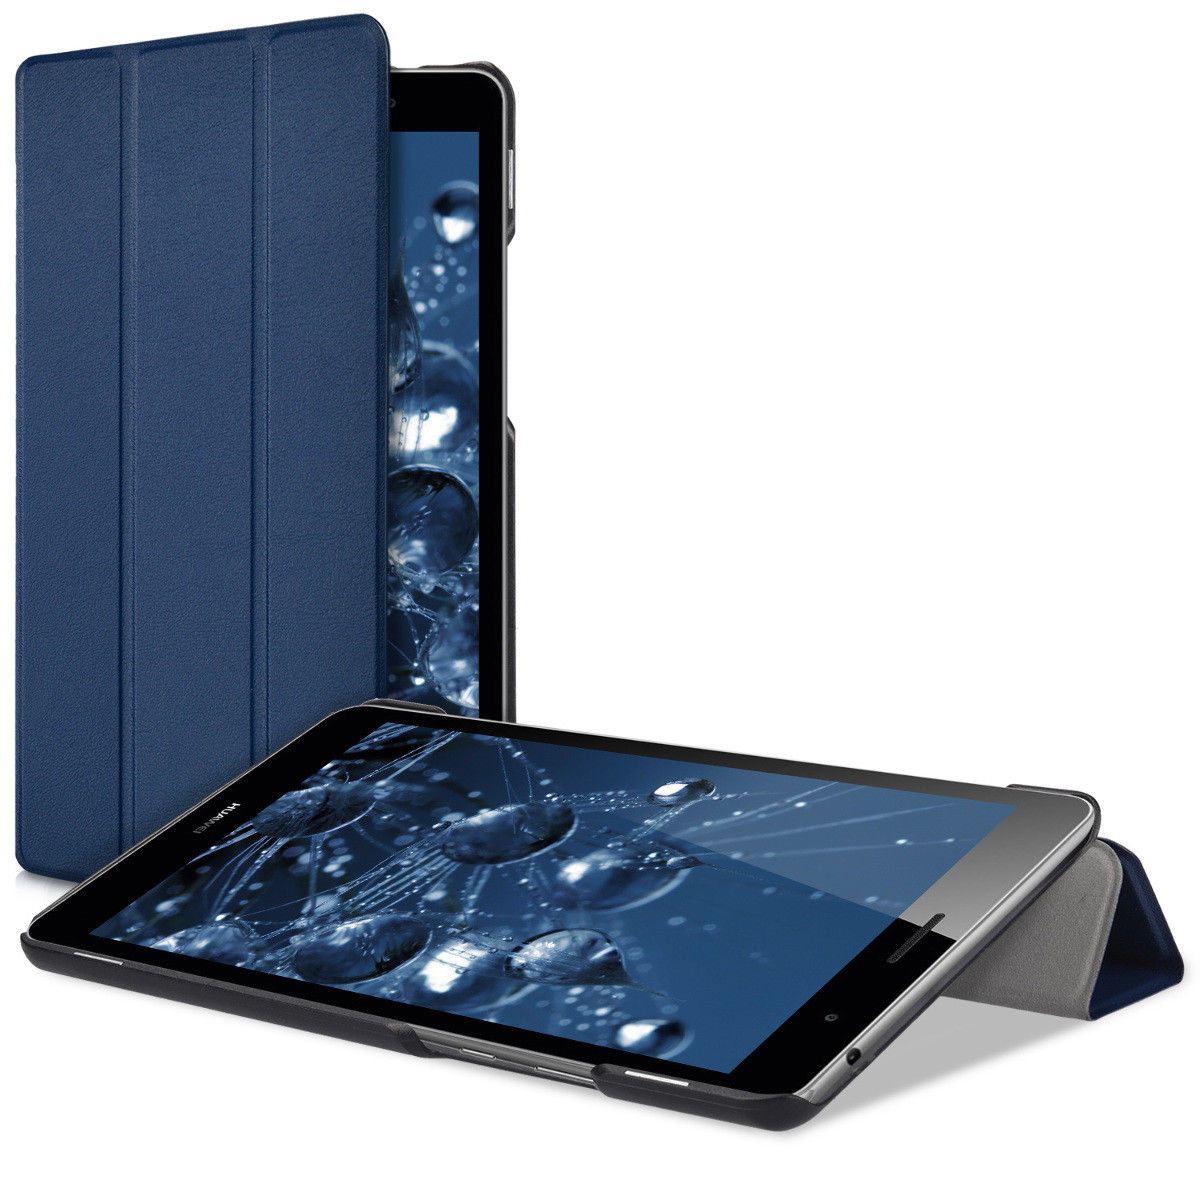 Pouzdro pro Huawei MediaPad T3 8.0 modré